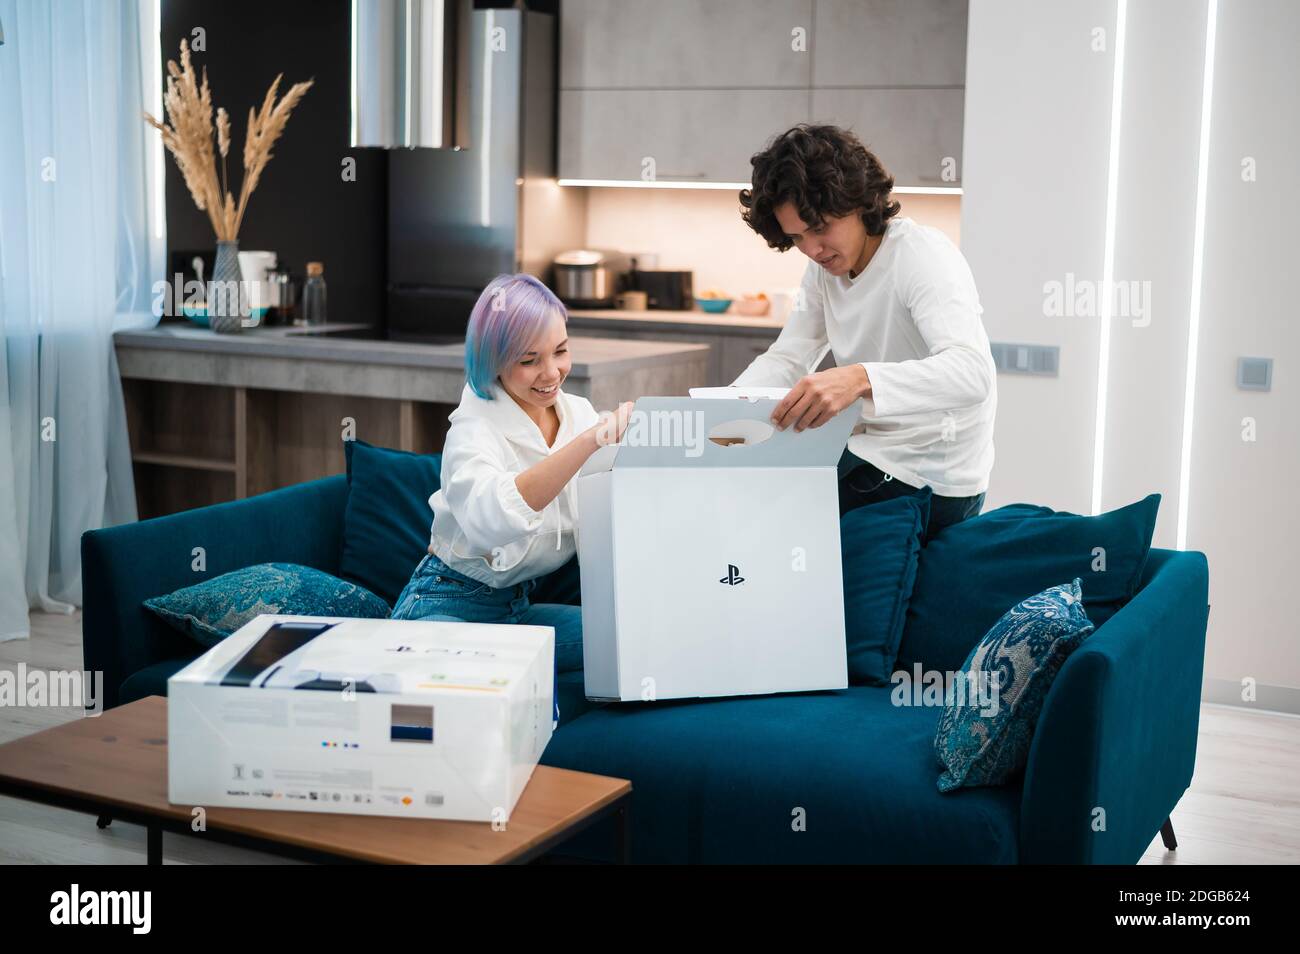 Un jeune couple heureux qui débarque la toute nouvelle console de jeu Sony PlayStation 5 chez lui. Moscou - novembre 28 2020. Banque D'Images